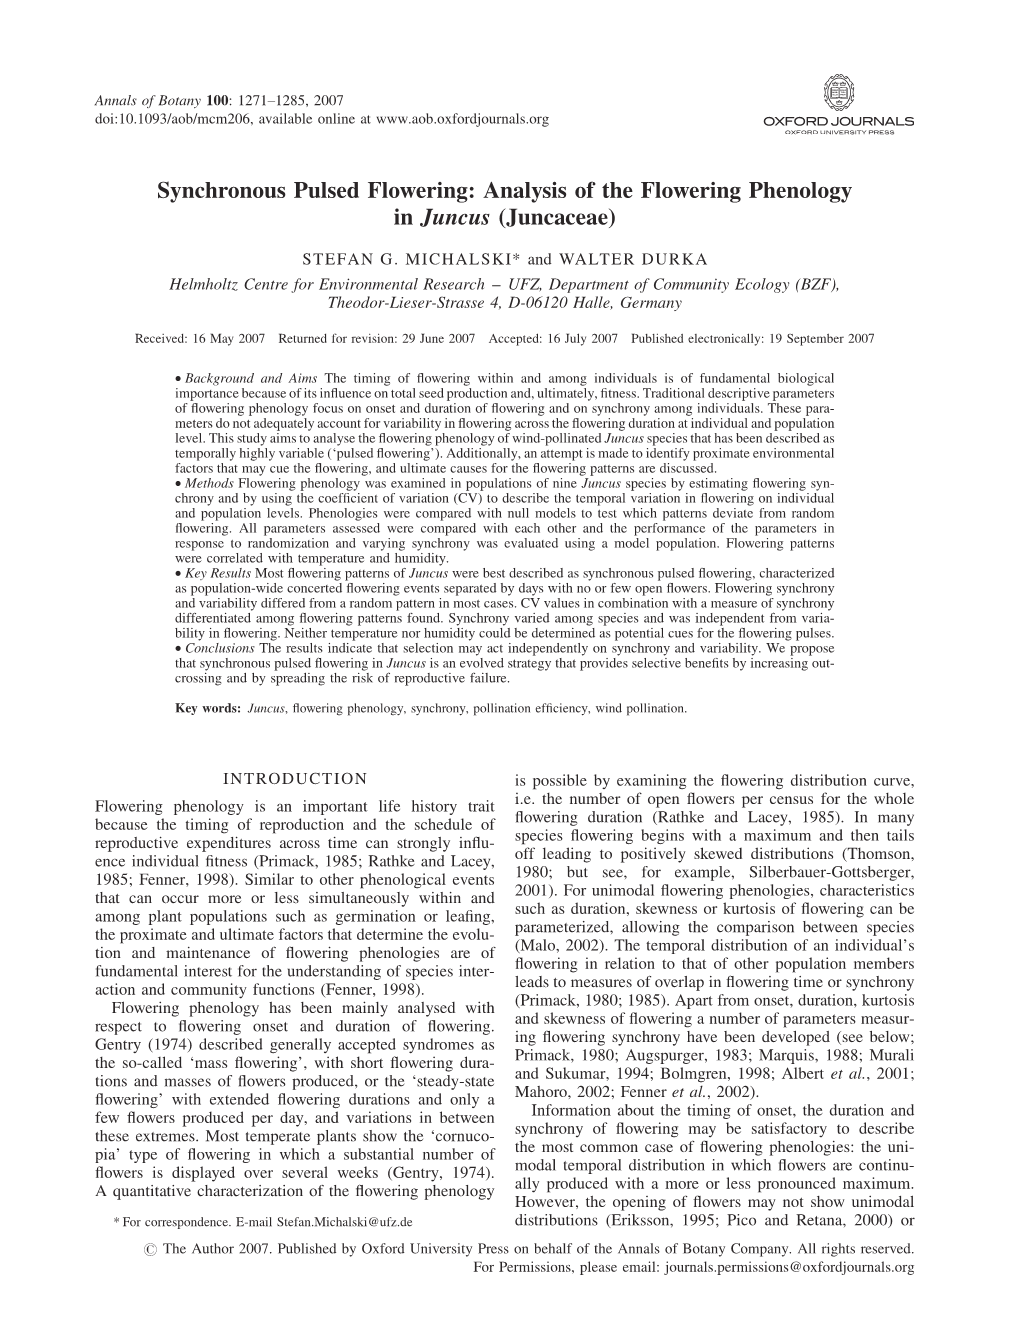 Analysis of the Flowering Phenology in Juncus (Juncaceae)